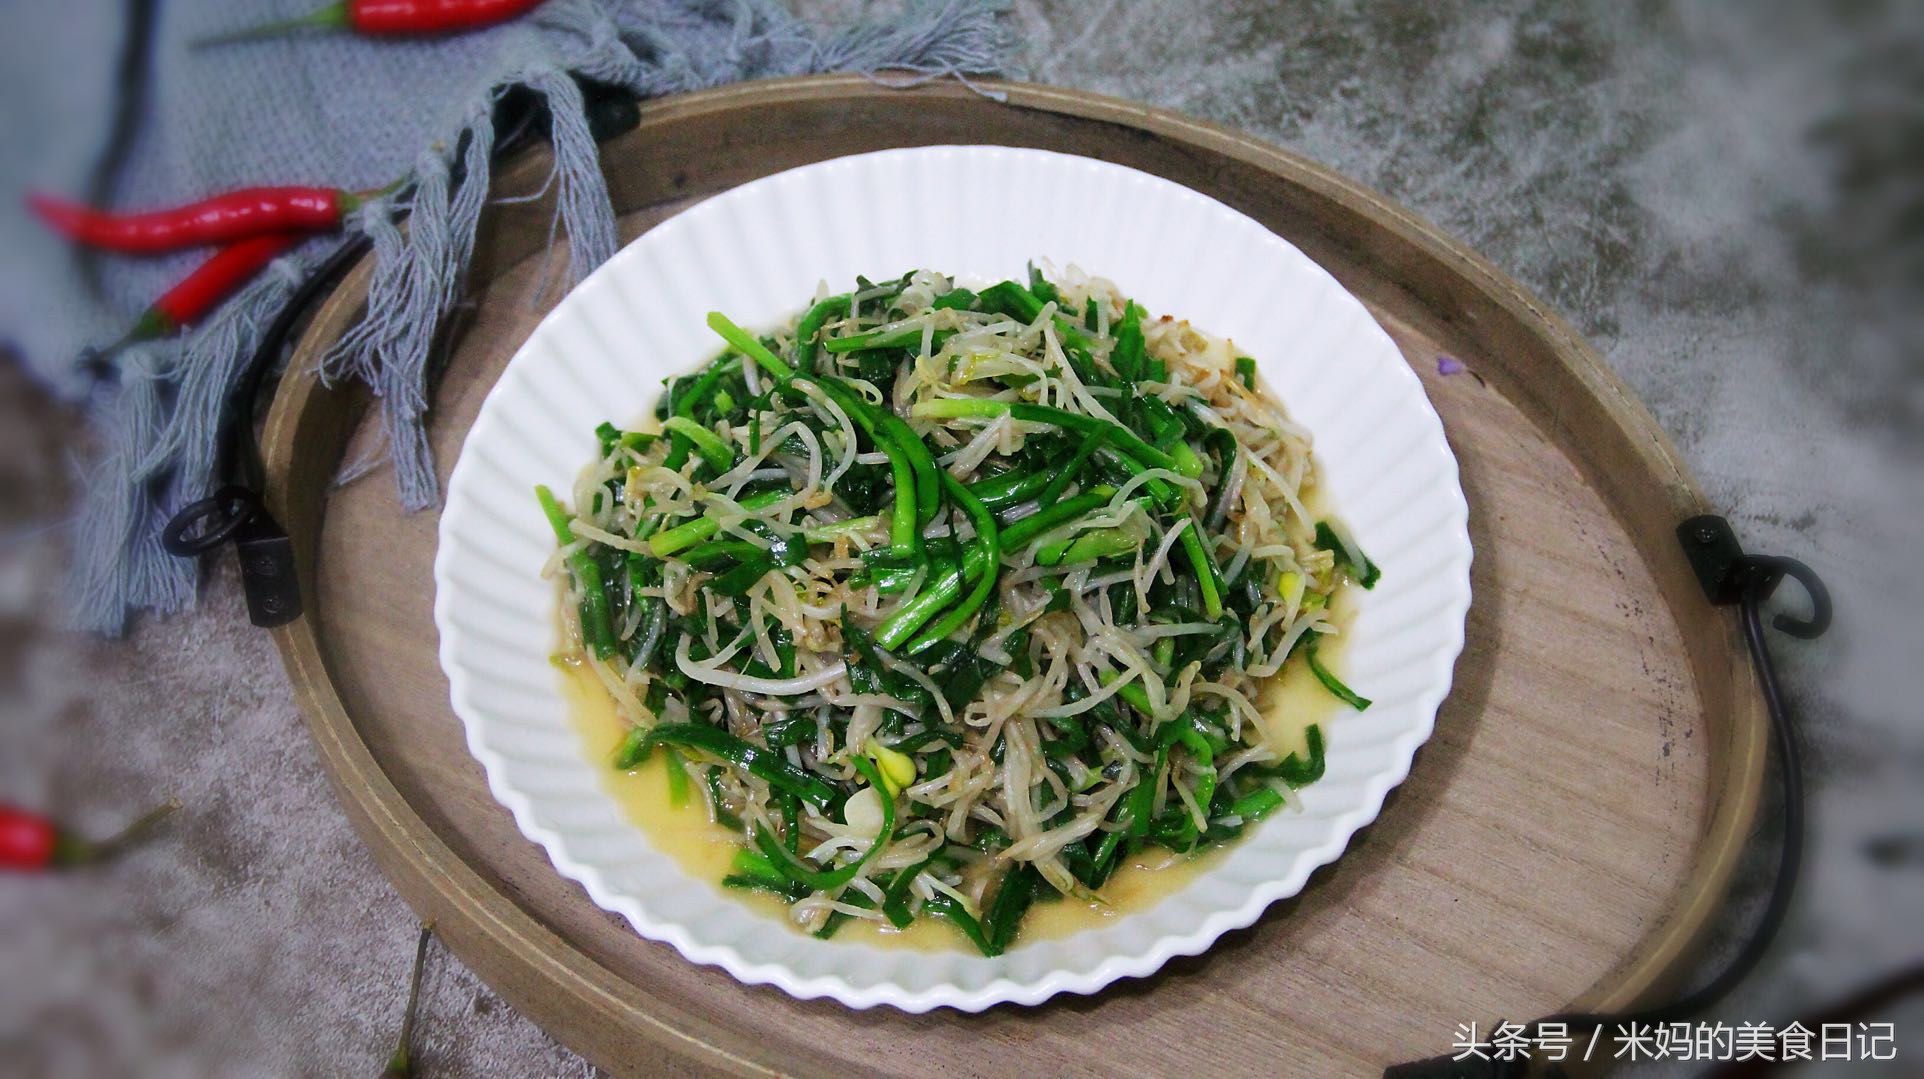 绿豆芽炒韭菜做法步骤图 越热越想吃清爽开胃又下饭